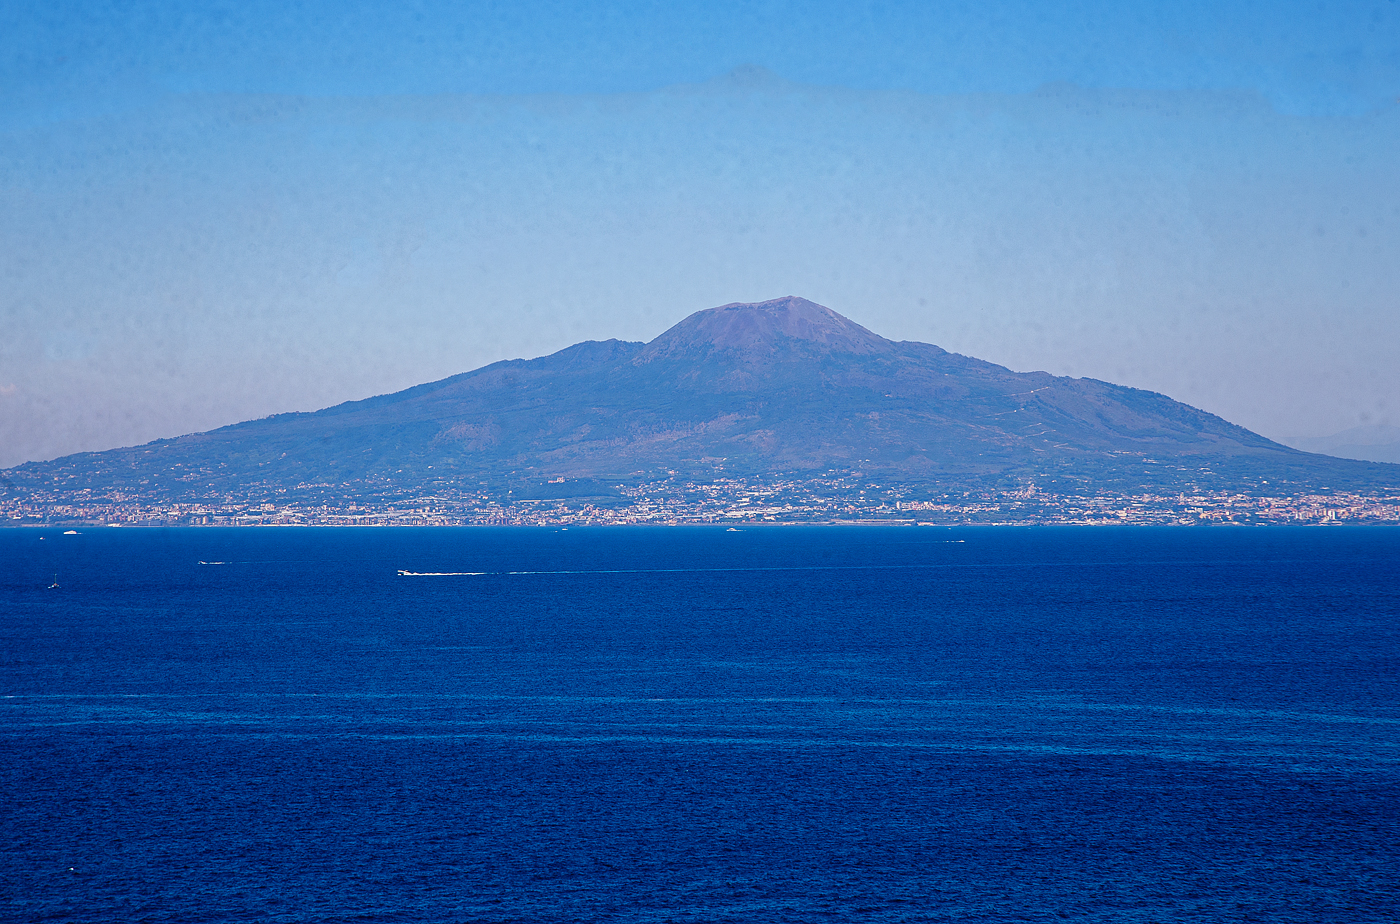 Blick von Sorrent auf den 1.281 m hohen einzigen aktiven Vulkan auf dem europäischen Festland, dem Vesuv (Vesuvio), am 15.07.2022.